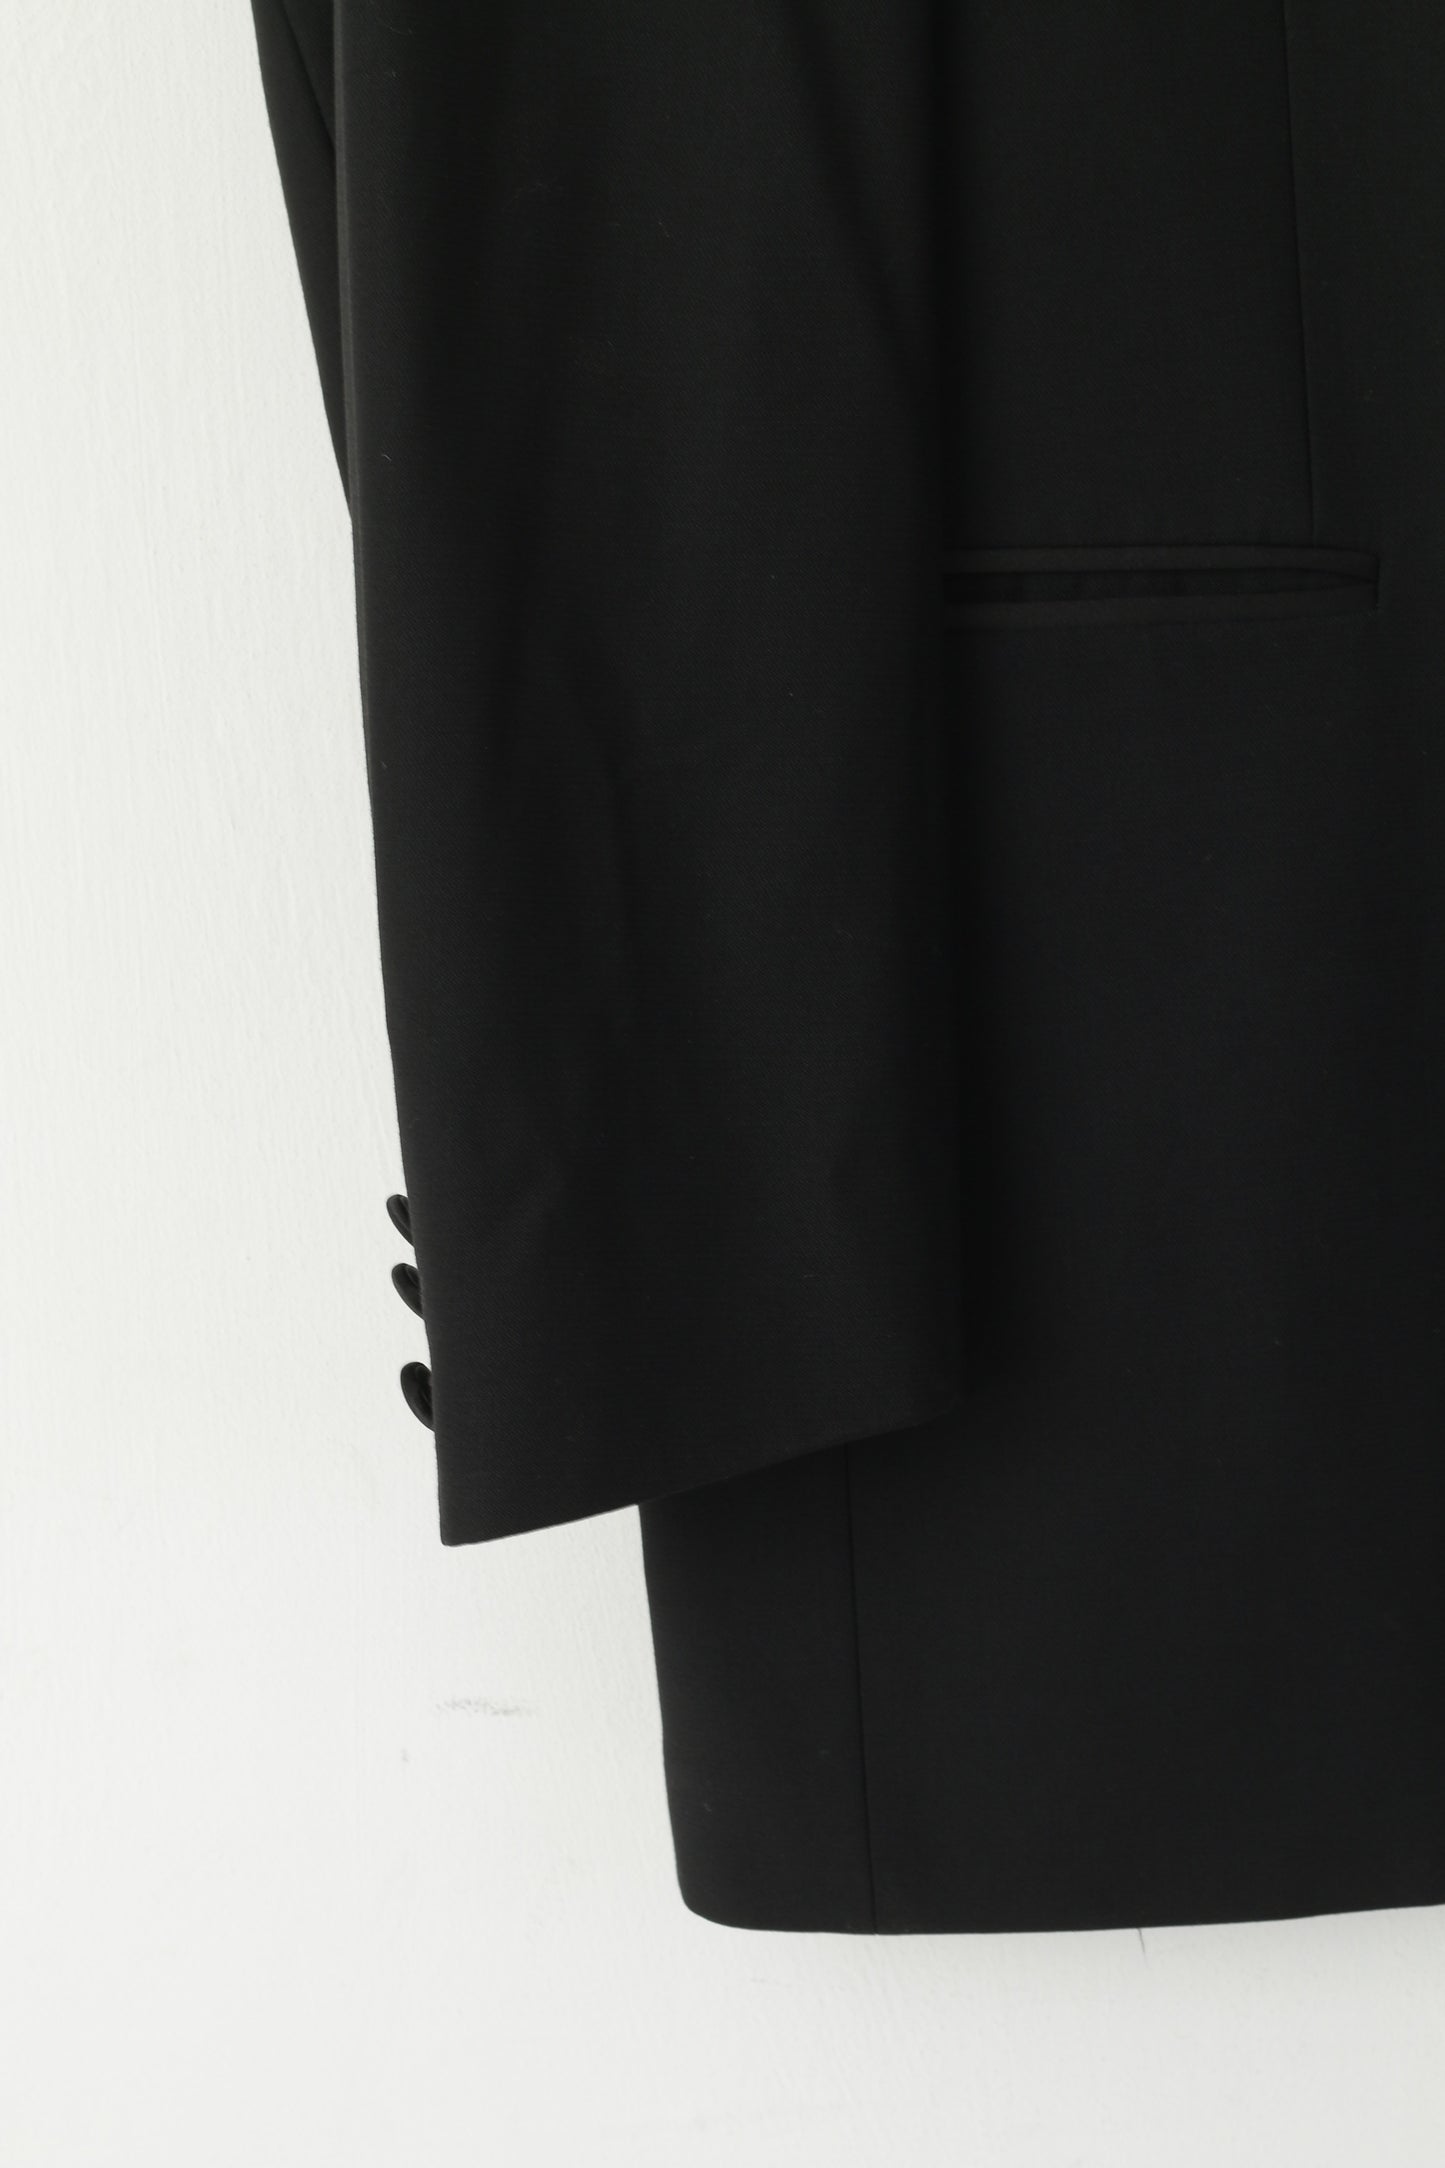 Pierre Cardin Men 42 52 Blazer Black Wool Top Suit Shiny Single Breasted Elegant Jacket